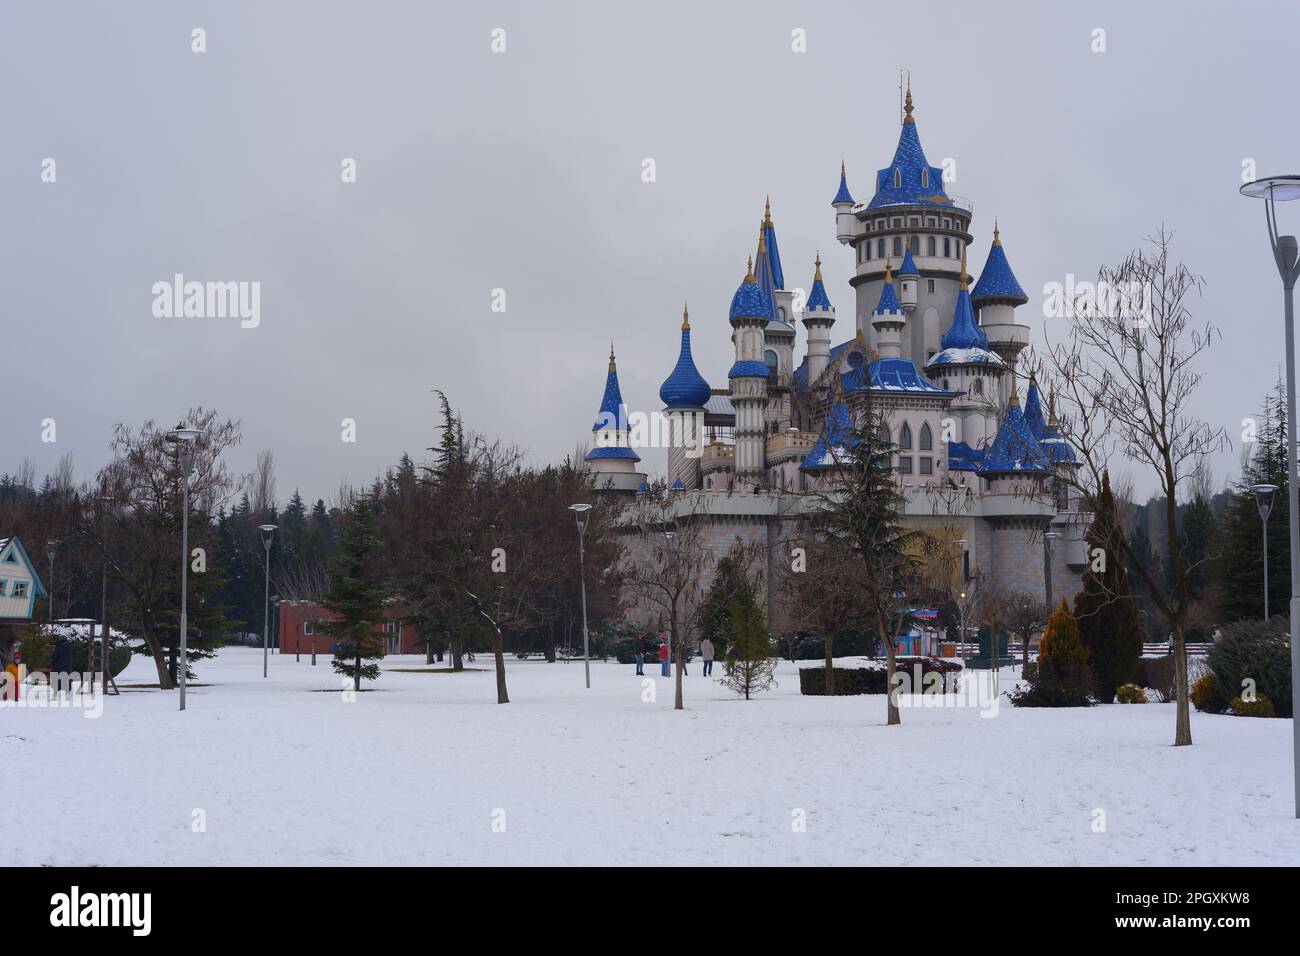 Nostalgische alte Burg im Sazova Park Eskisehir mit blauen Türmen. Unter Schnee an einem kalten Wintertag mit Bäumen und Büschen unter Schnee. Stockfoto